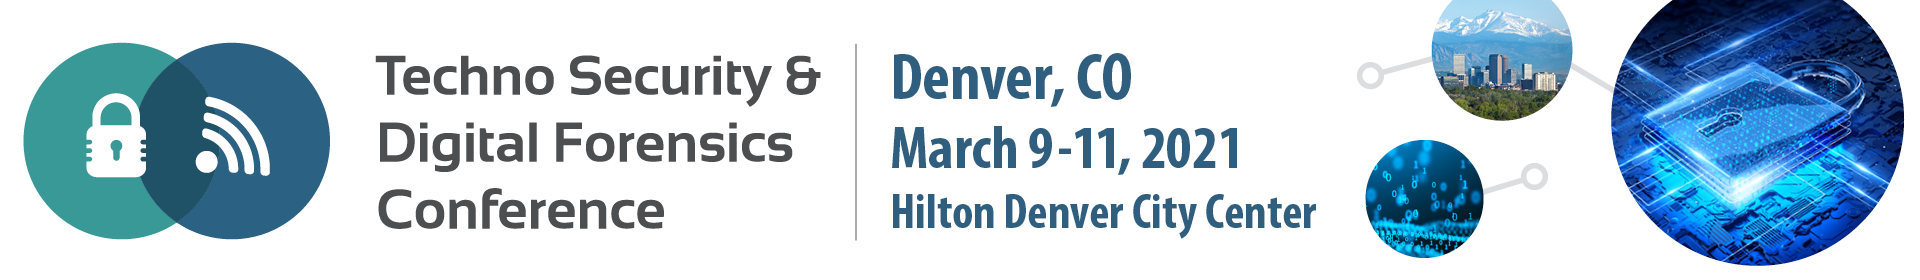 Techno Security & Digital Forensics Conference Denver Event Banner